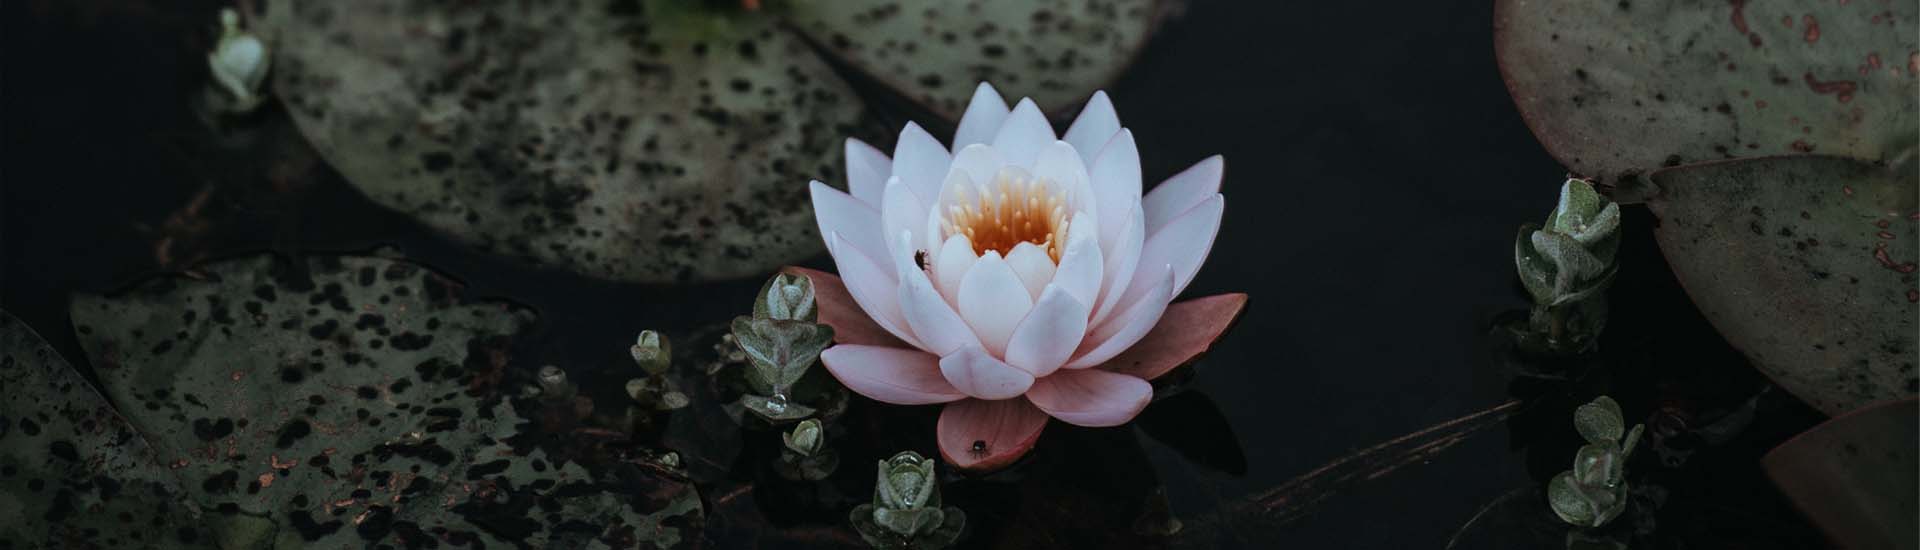 Lotus Floating